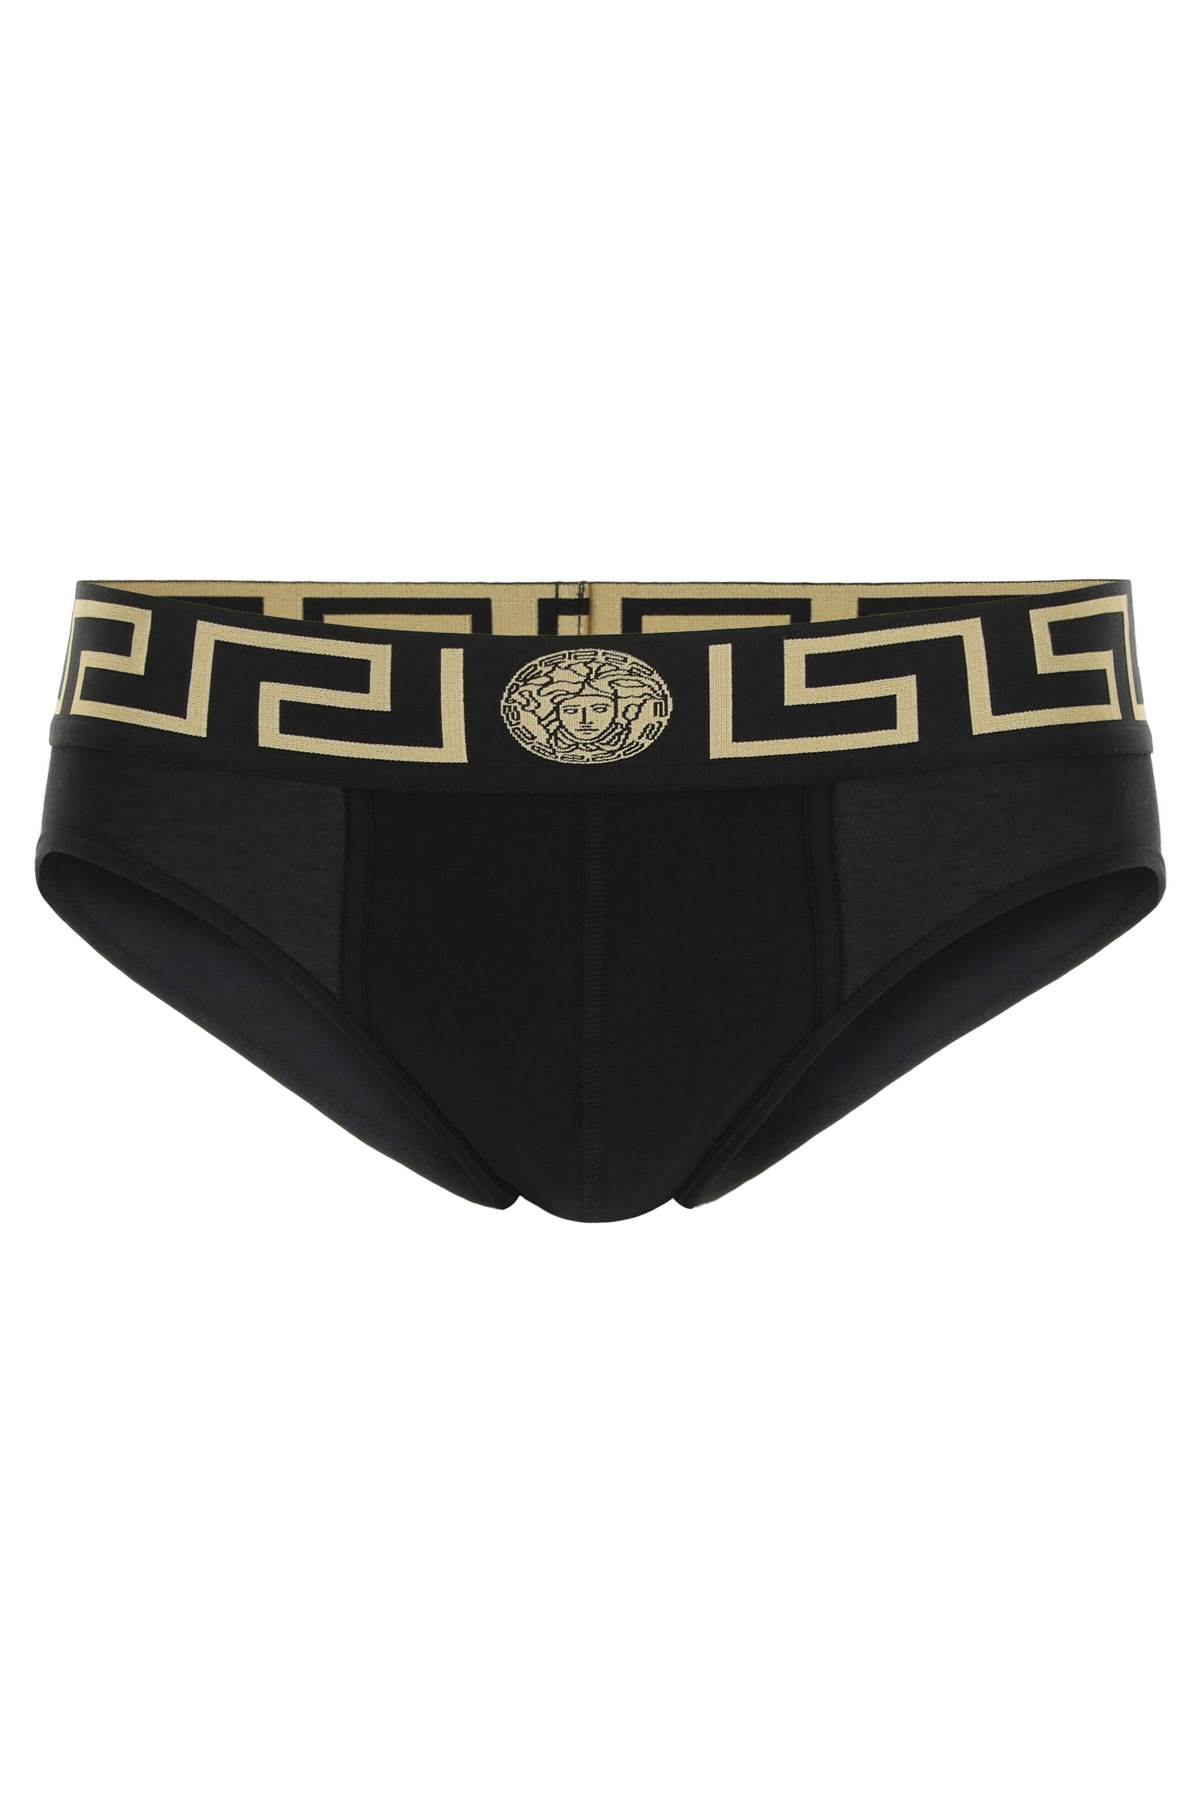 Versace Greca Border Underwear Briefs